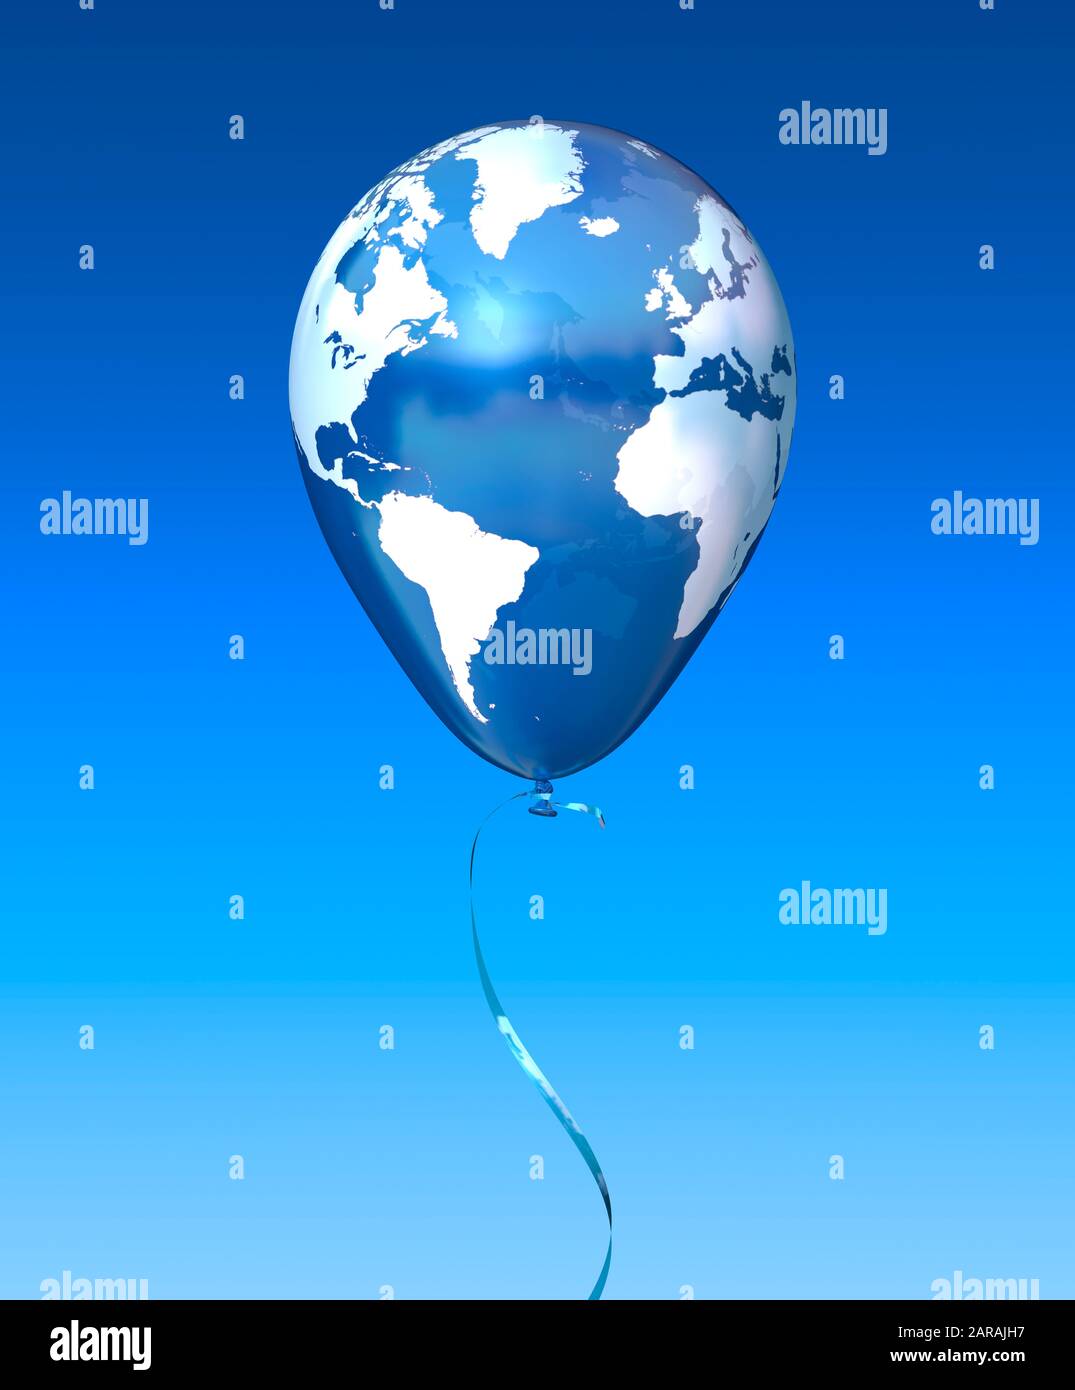 Ballon in Form eines Globus, der in einem blauen Himmel schwebt. Verletzliches, zerbrechliches, empfindliches Gleichgewicht. Stockfoto